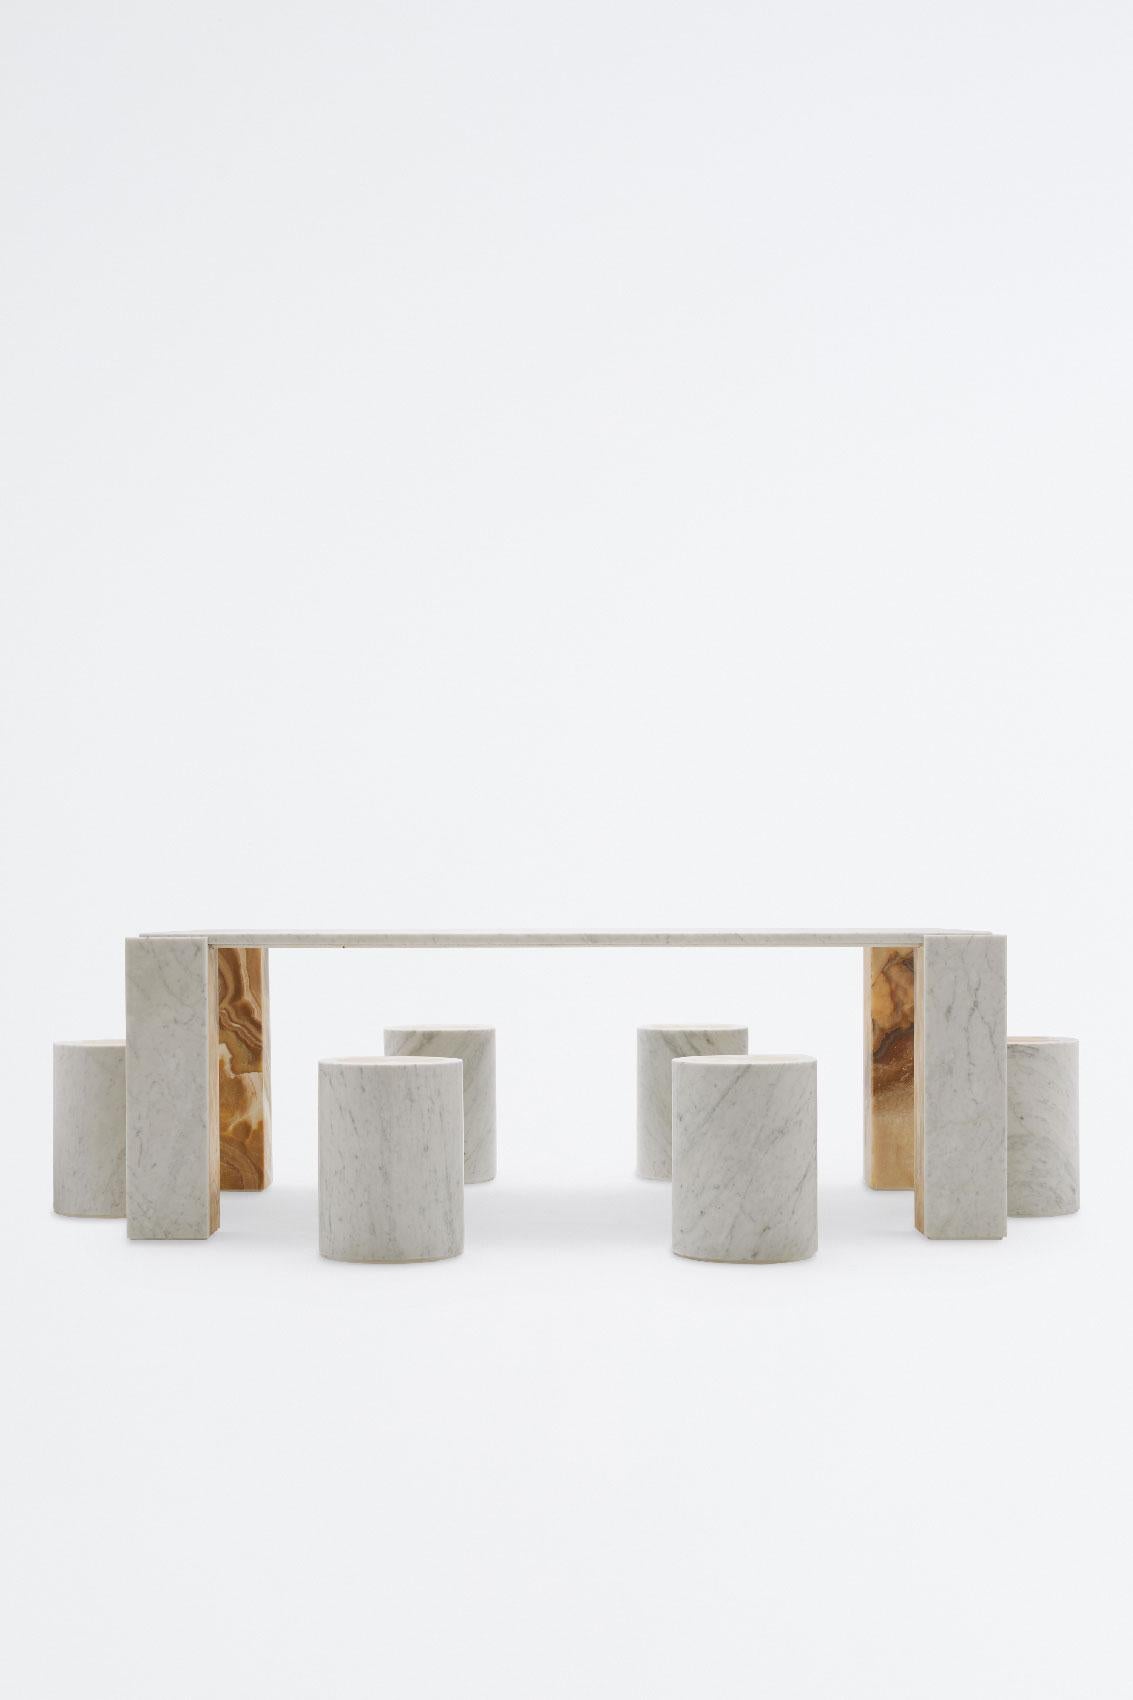 Einzigartiger weißer Carrara-Tisch mit Honey Onyx-Marketerien als Platzhalter für die aufzustellenden Gegenstände. Der Honig-Onyx ist auch auf der Innenseite des Fußes zu finden. Der Tisch ist das Ergebnis der Collaboration zwischen den